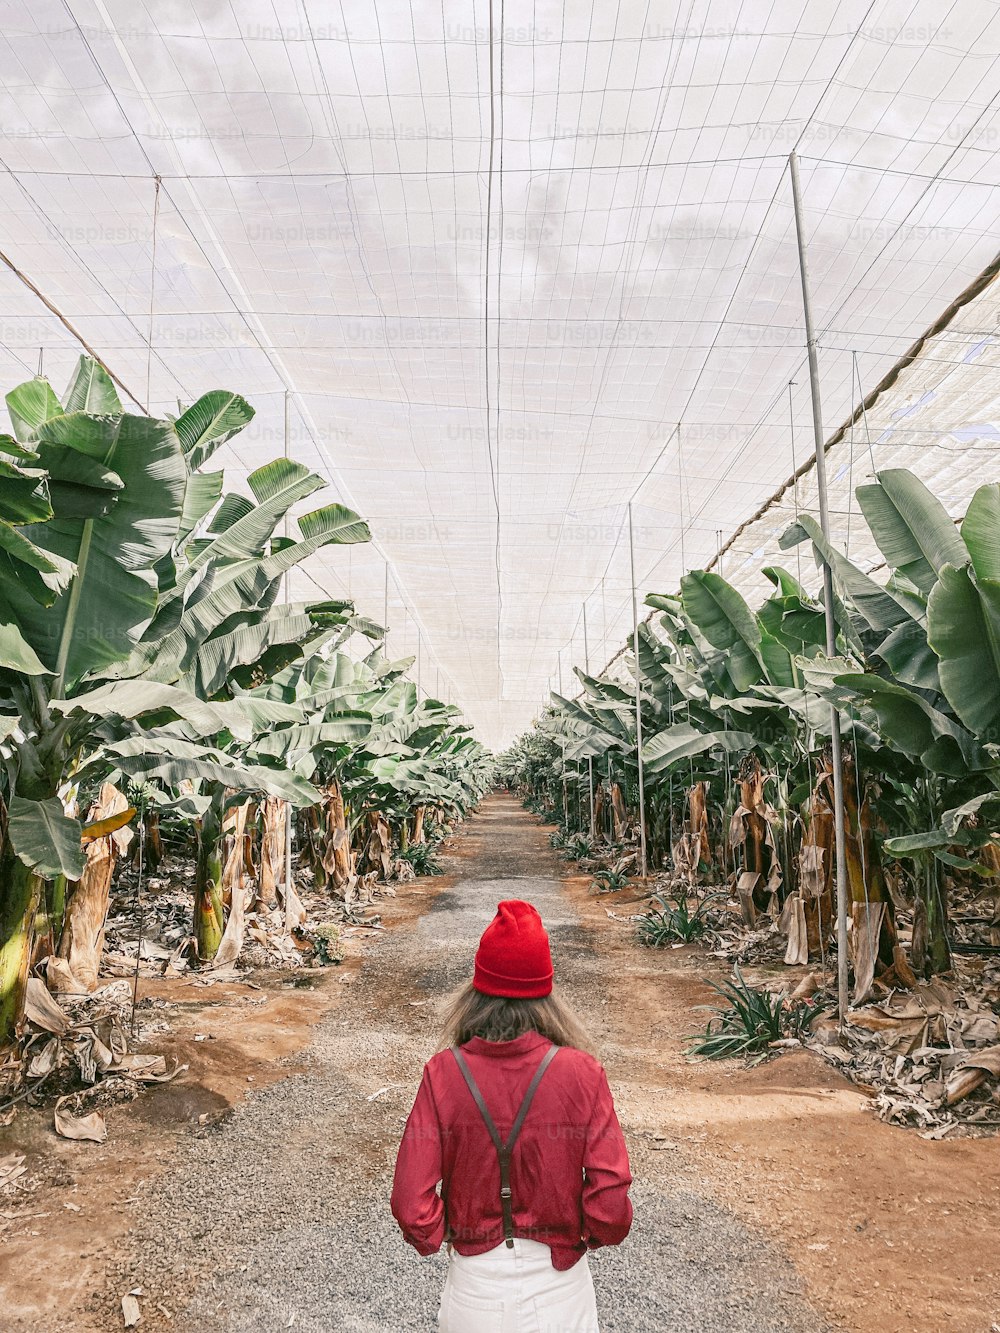 관광객이나 농부로서의 여자는 농장에서 바나나 줄 사이를 걷는 빨간색과 흰색으로 캐주얼하게 옷을 입었습니다. 휴대 전화에서 만든 이미지